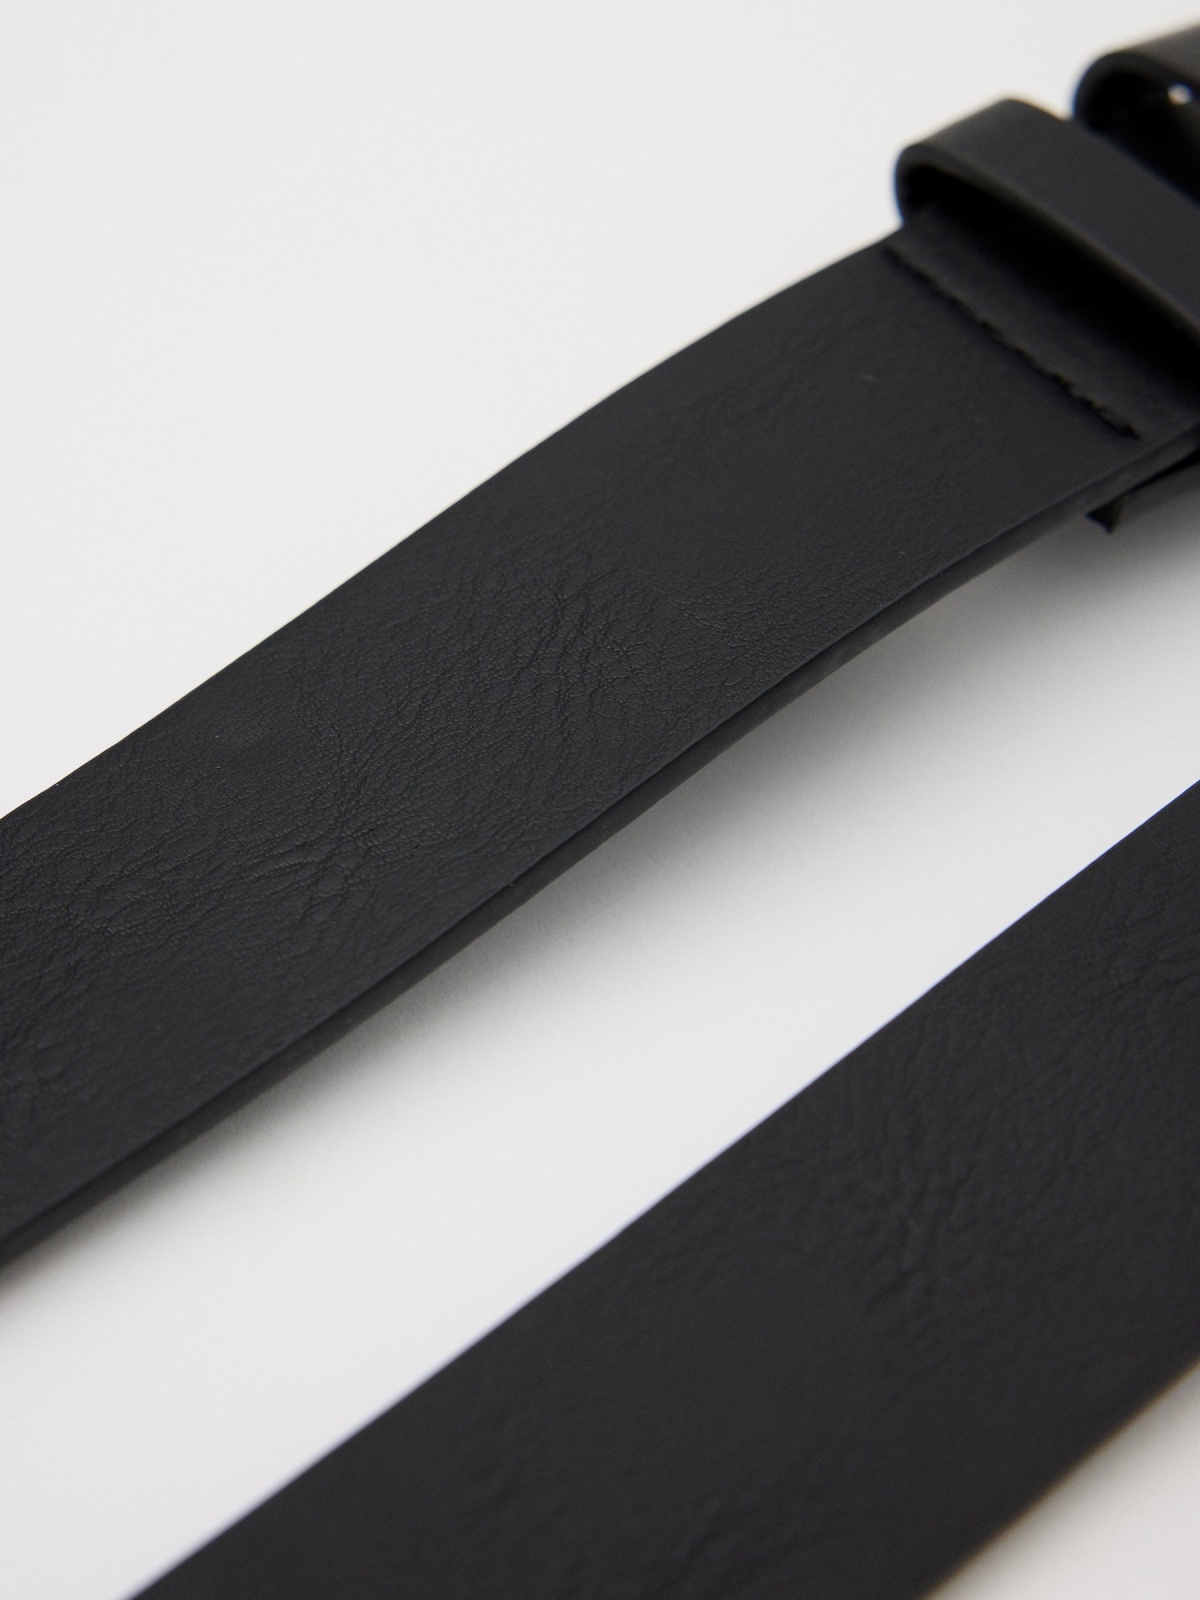 Men's black leatherette belt black detail view